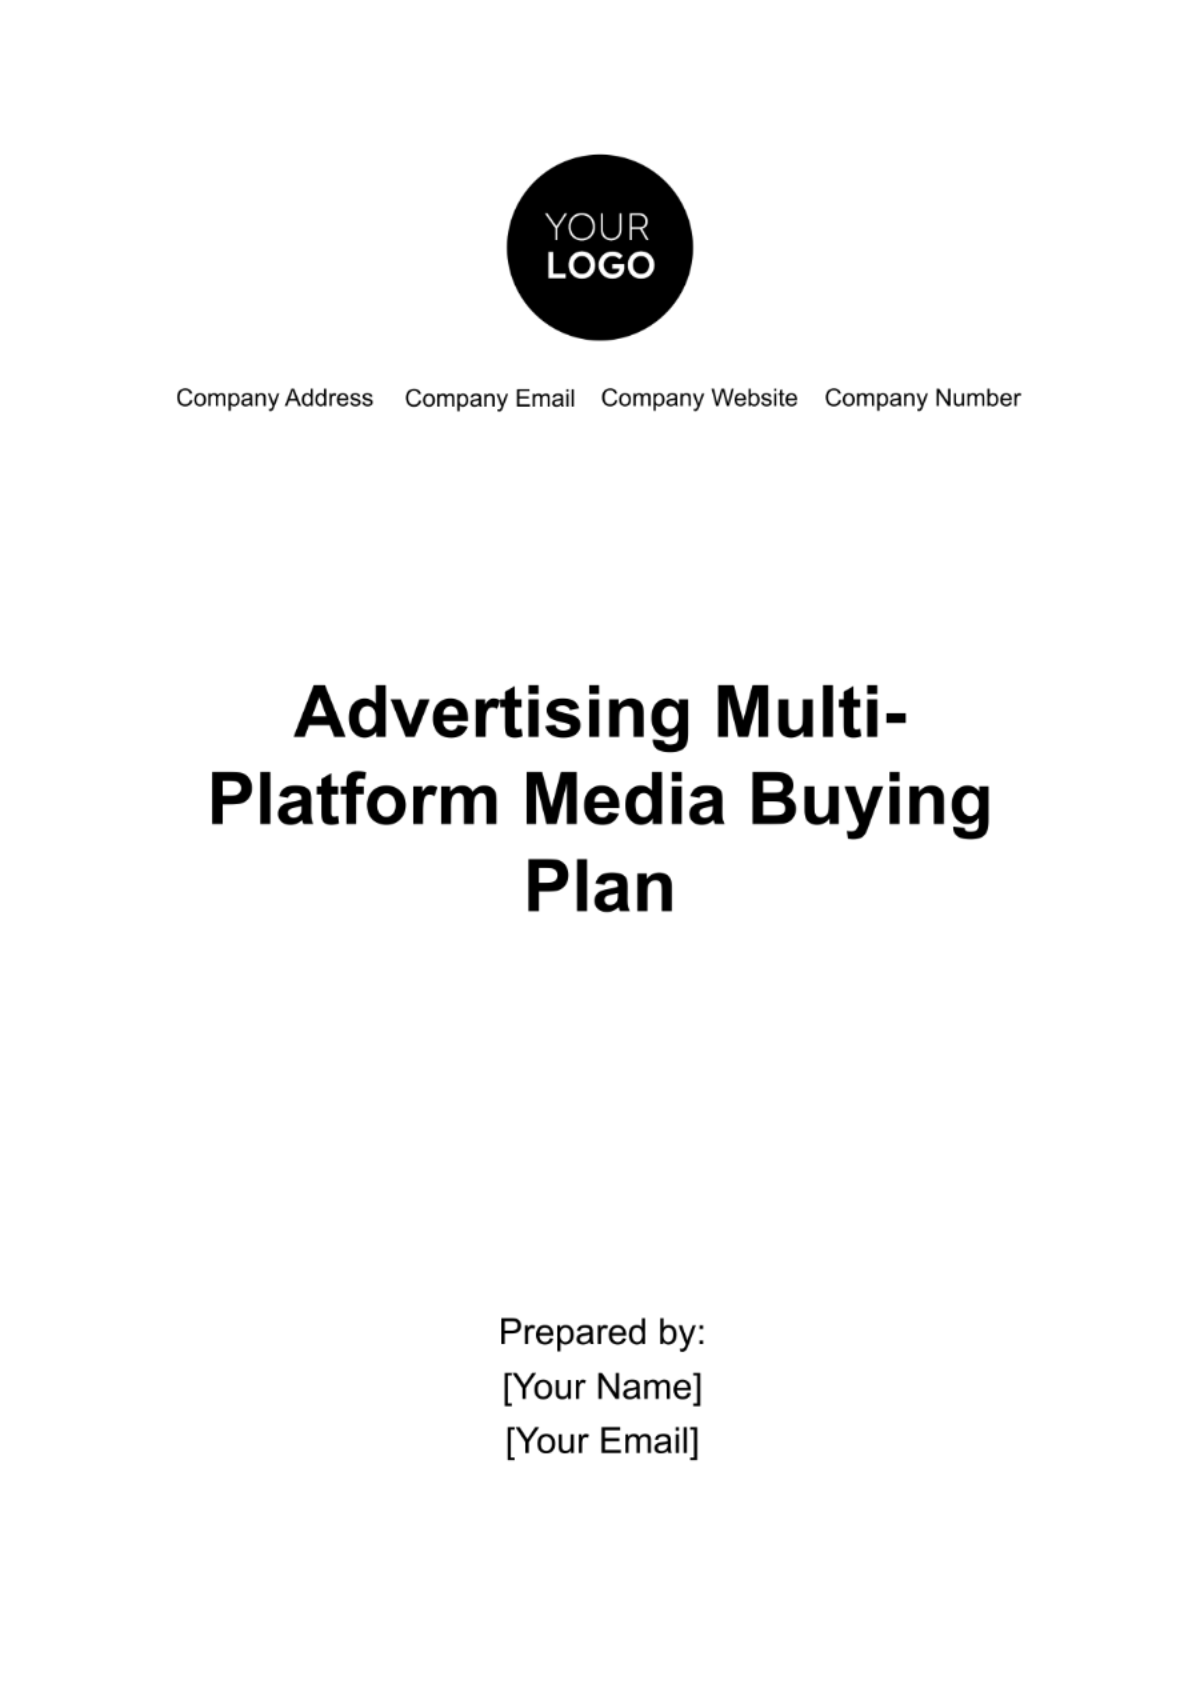 Free Advertising Multi-Platform Media Buying Plan Template